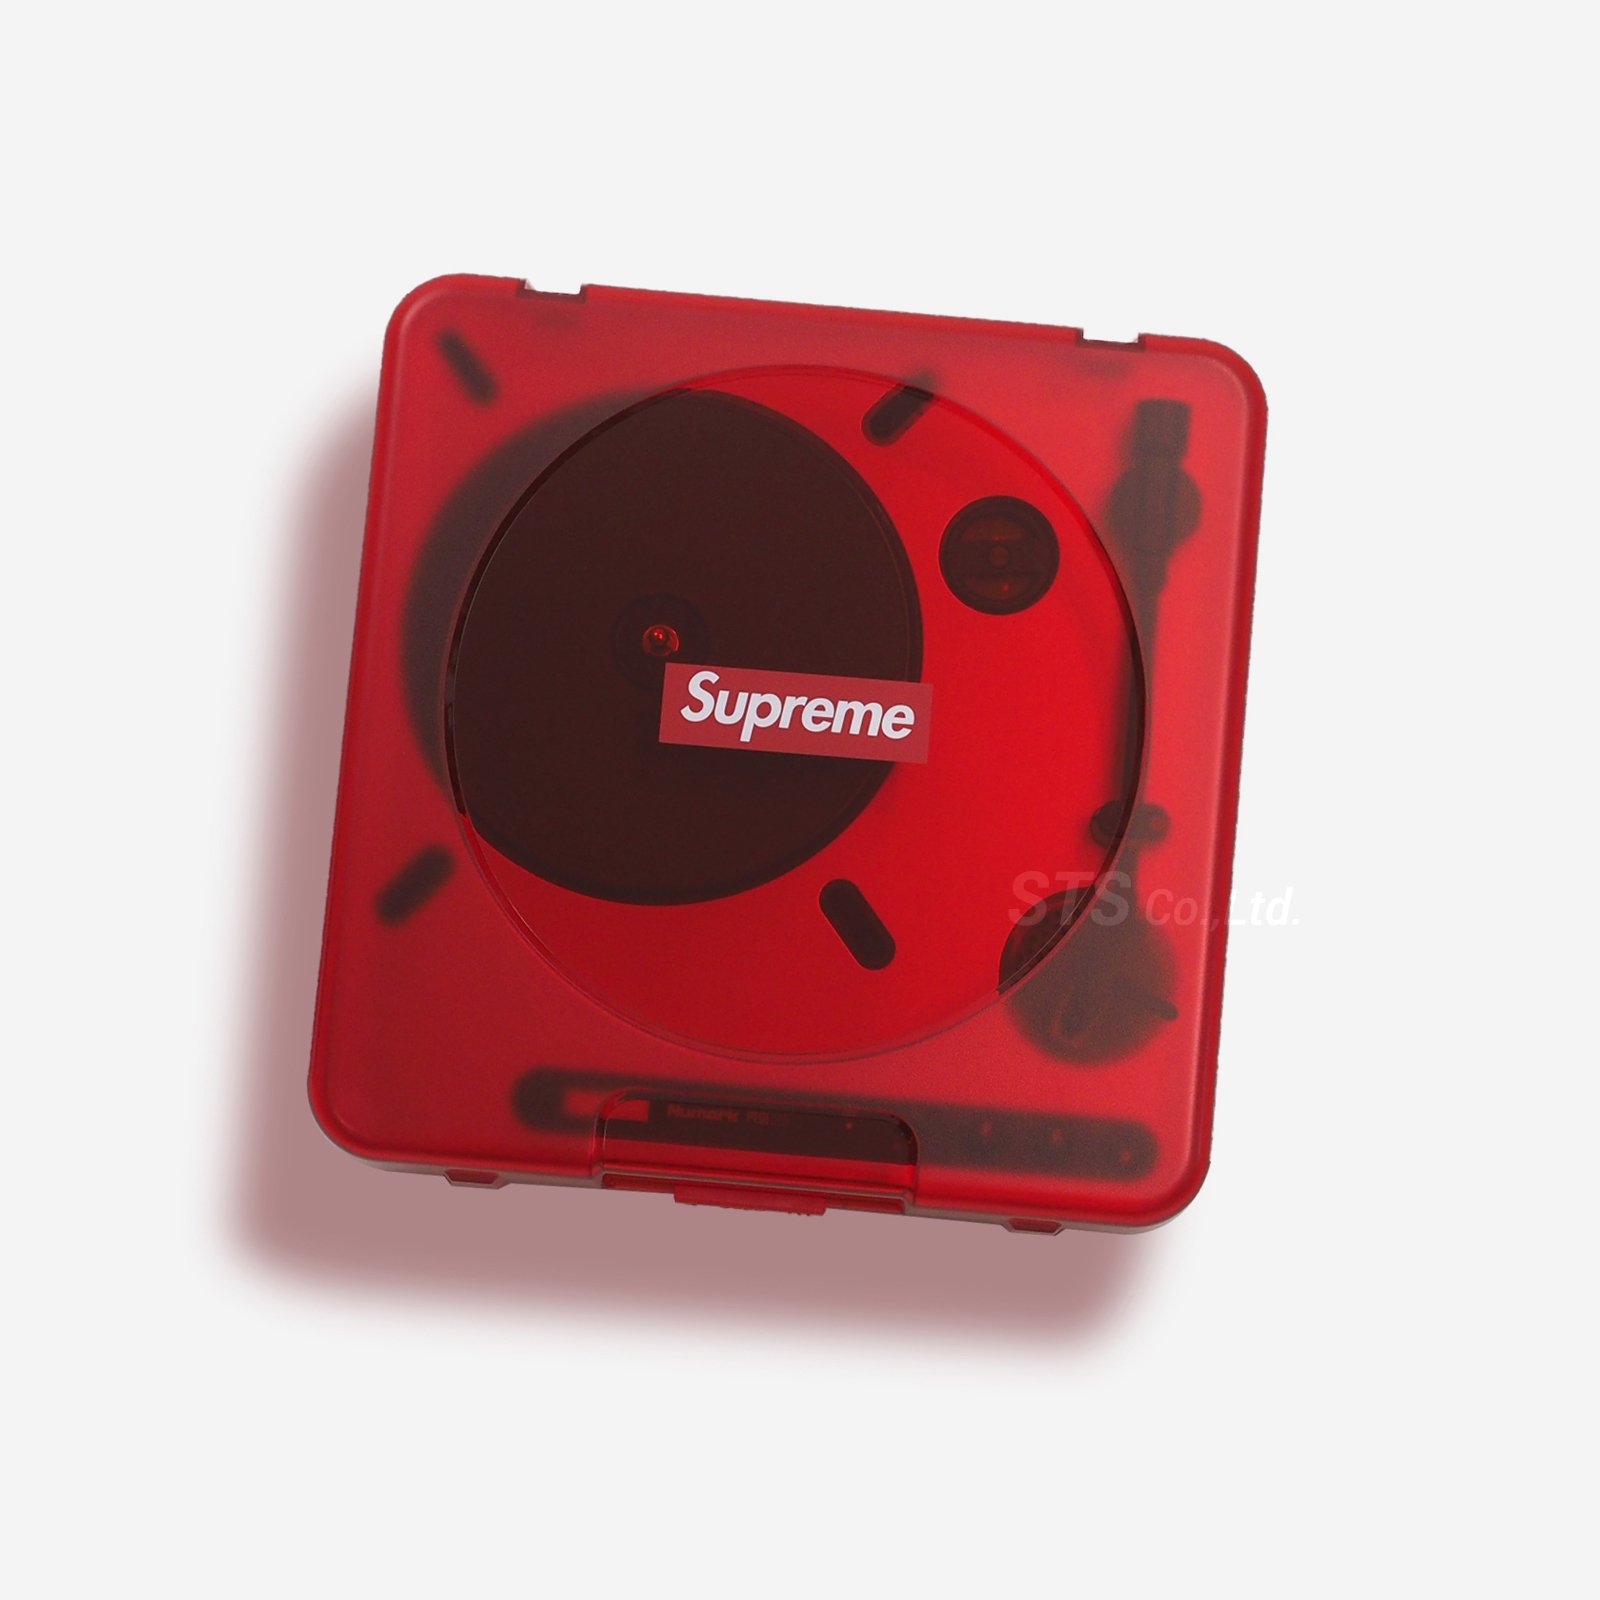 Supreme/Numark PT01 Portable Turntable - ParkSIDER